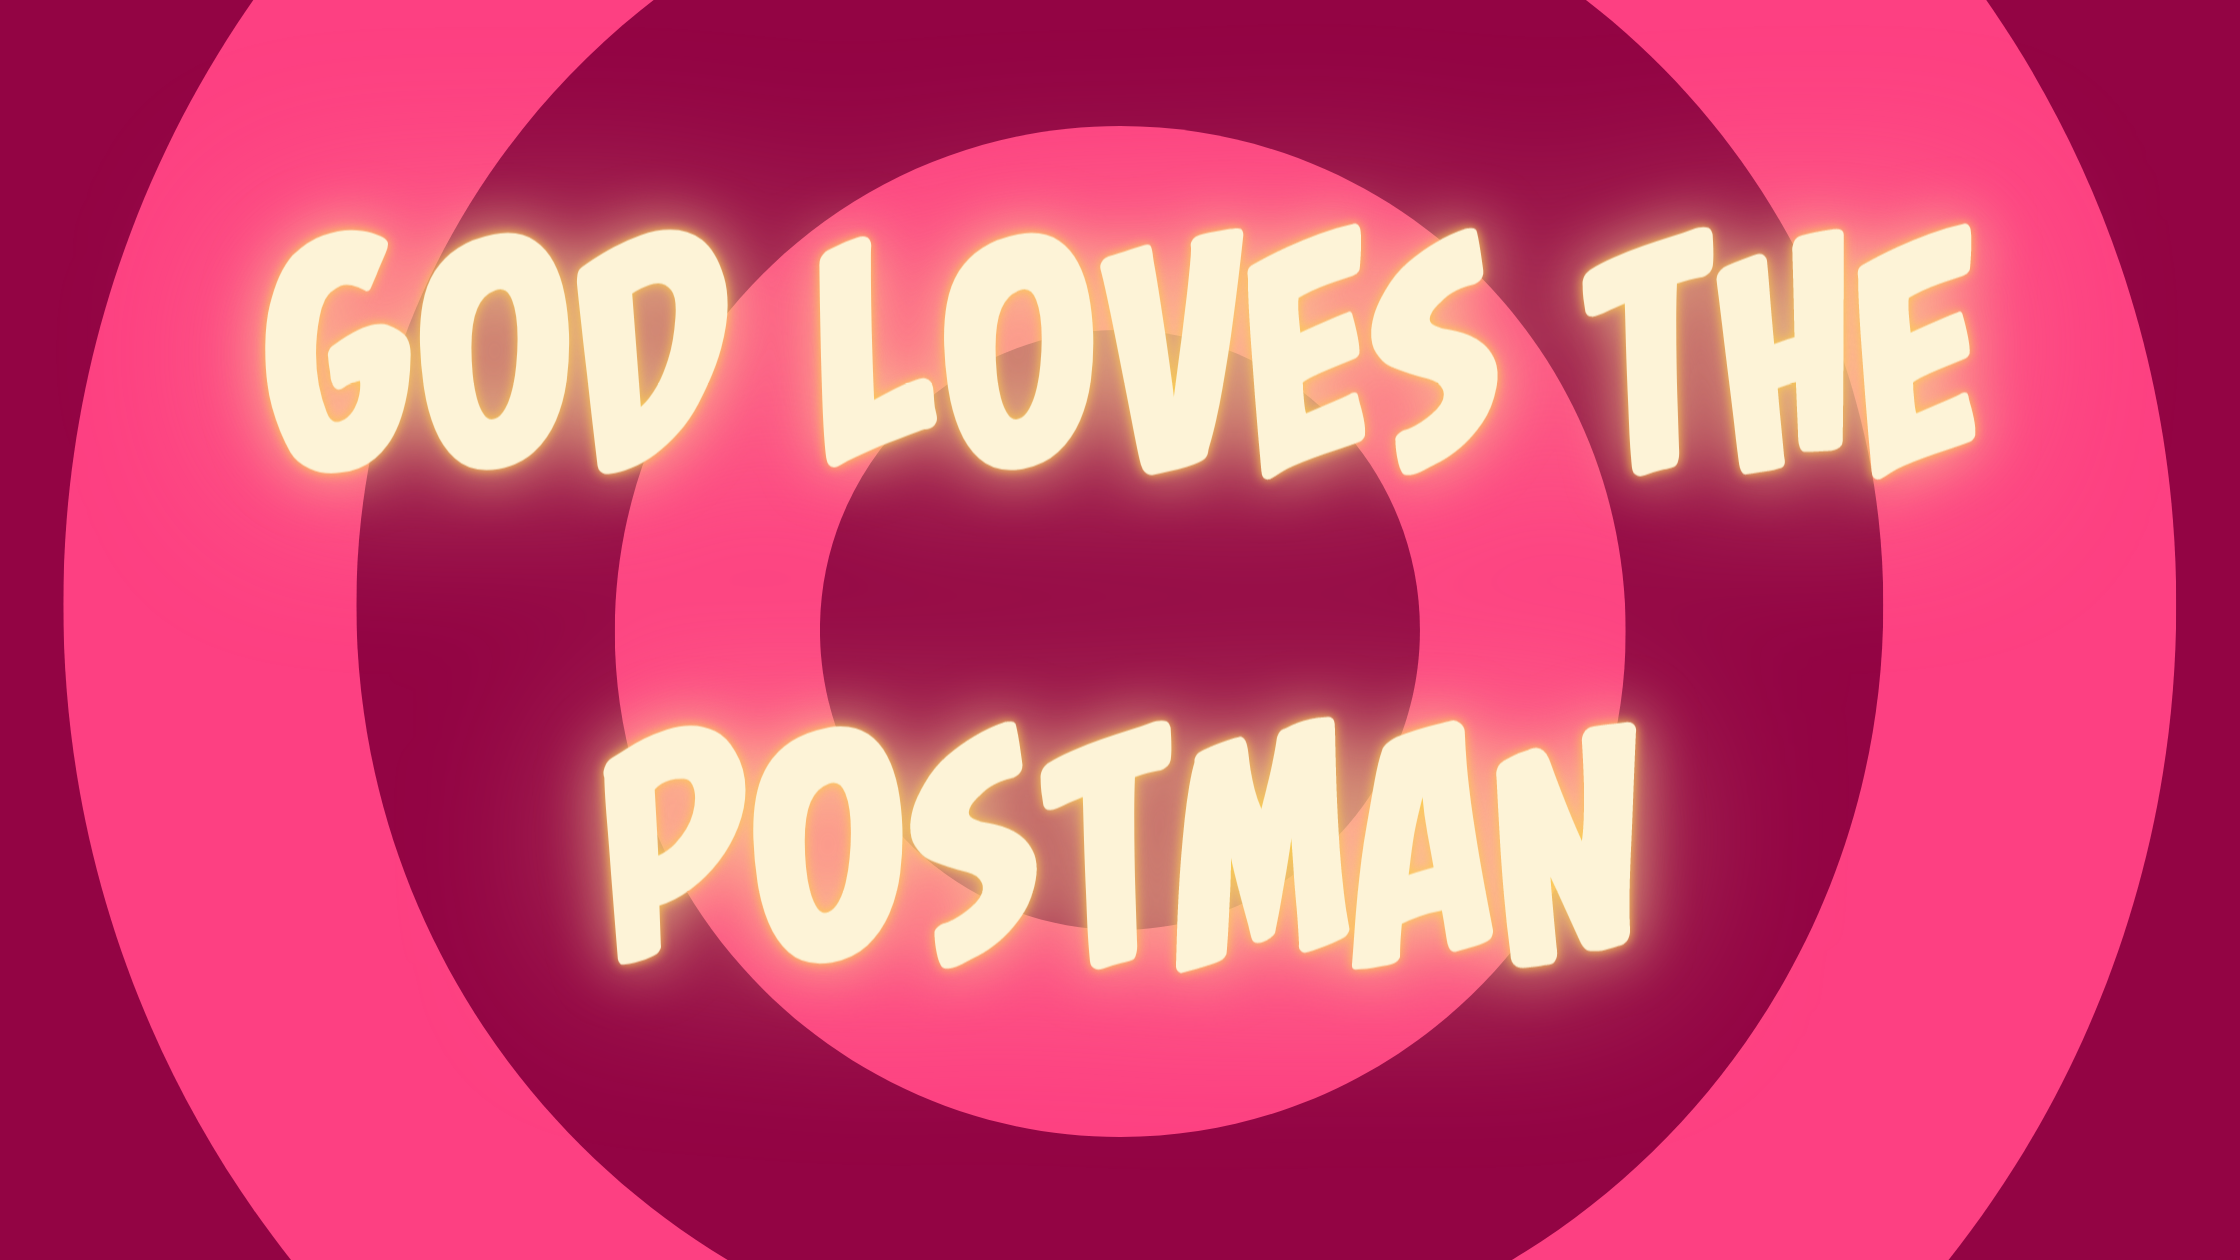 God Loves The Postman